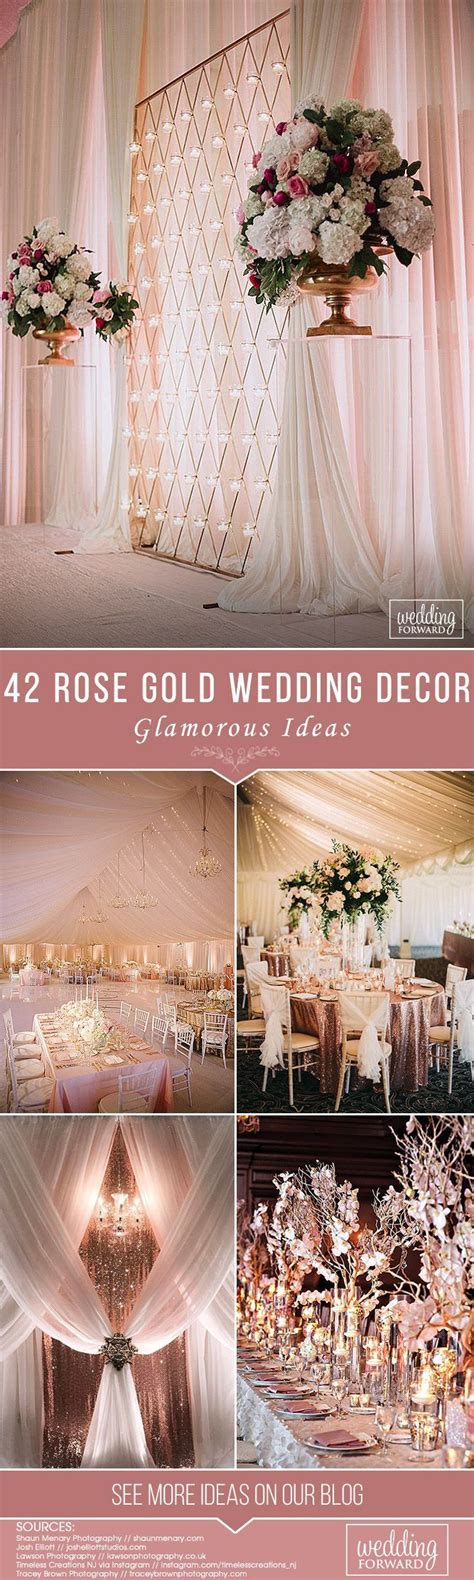 42 Glamorous Rose Gold Wedding Decor Ideas Wedding Decorations Gold